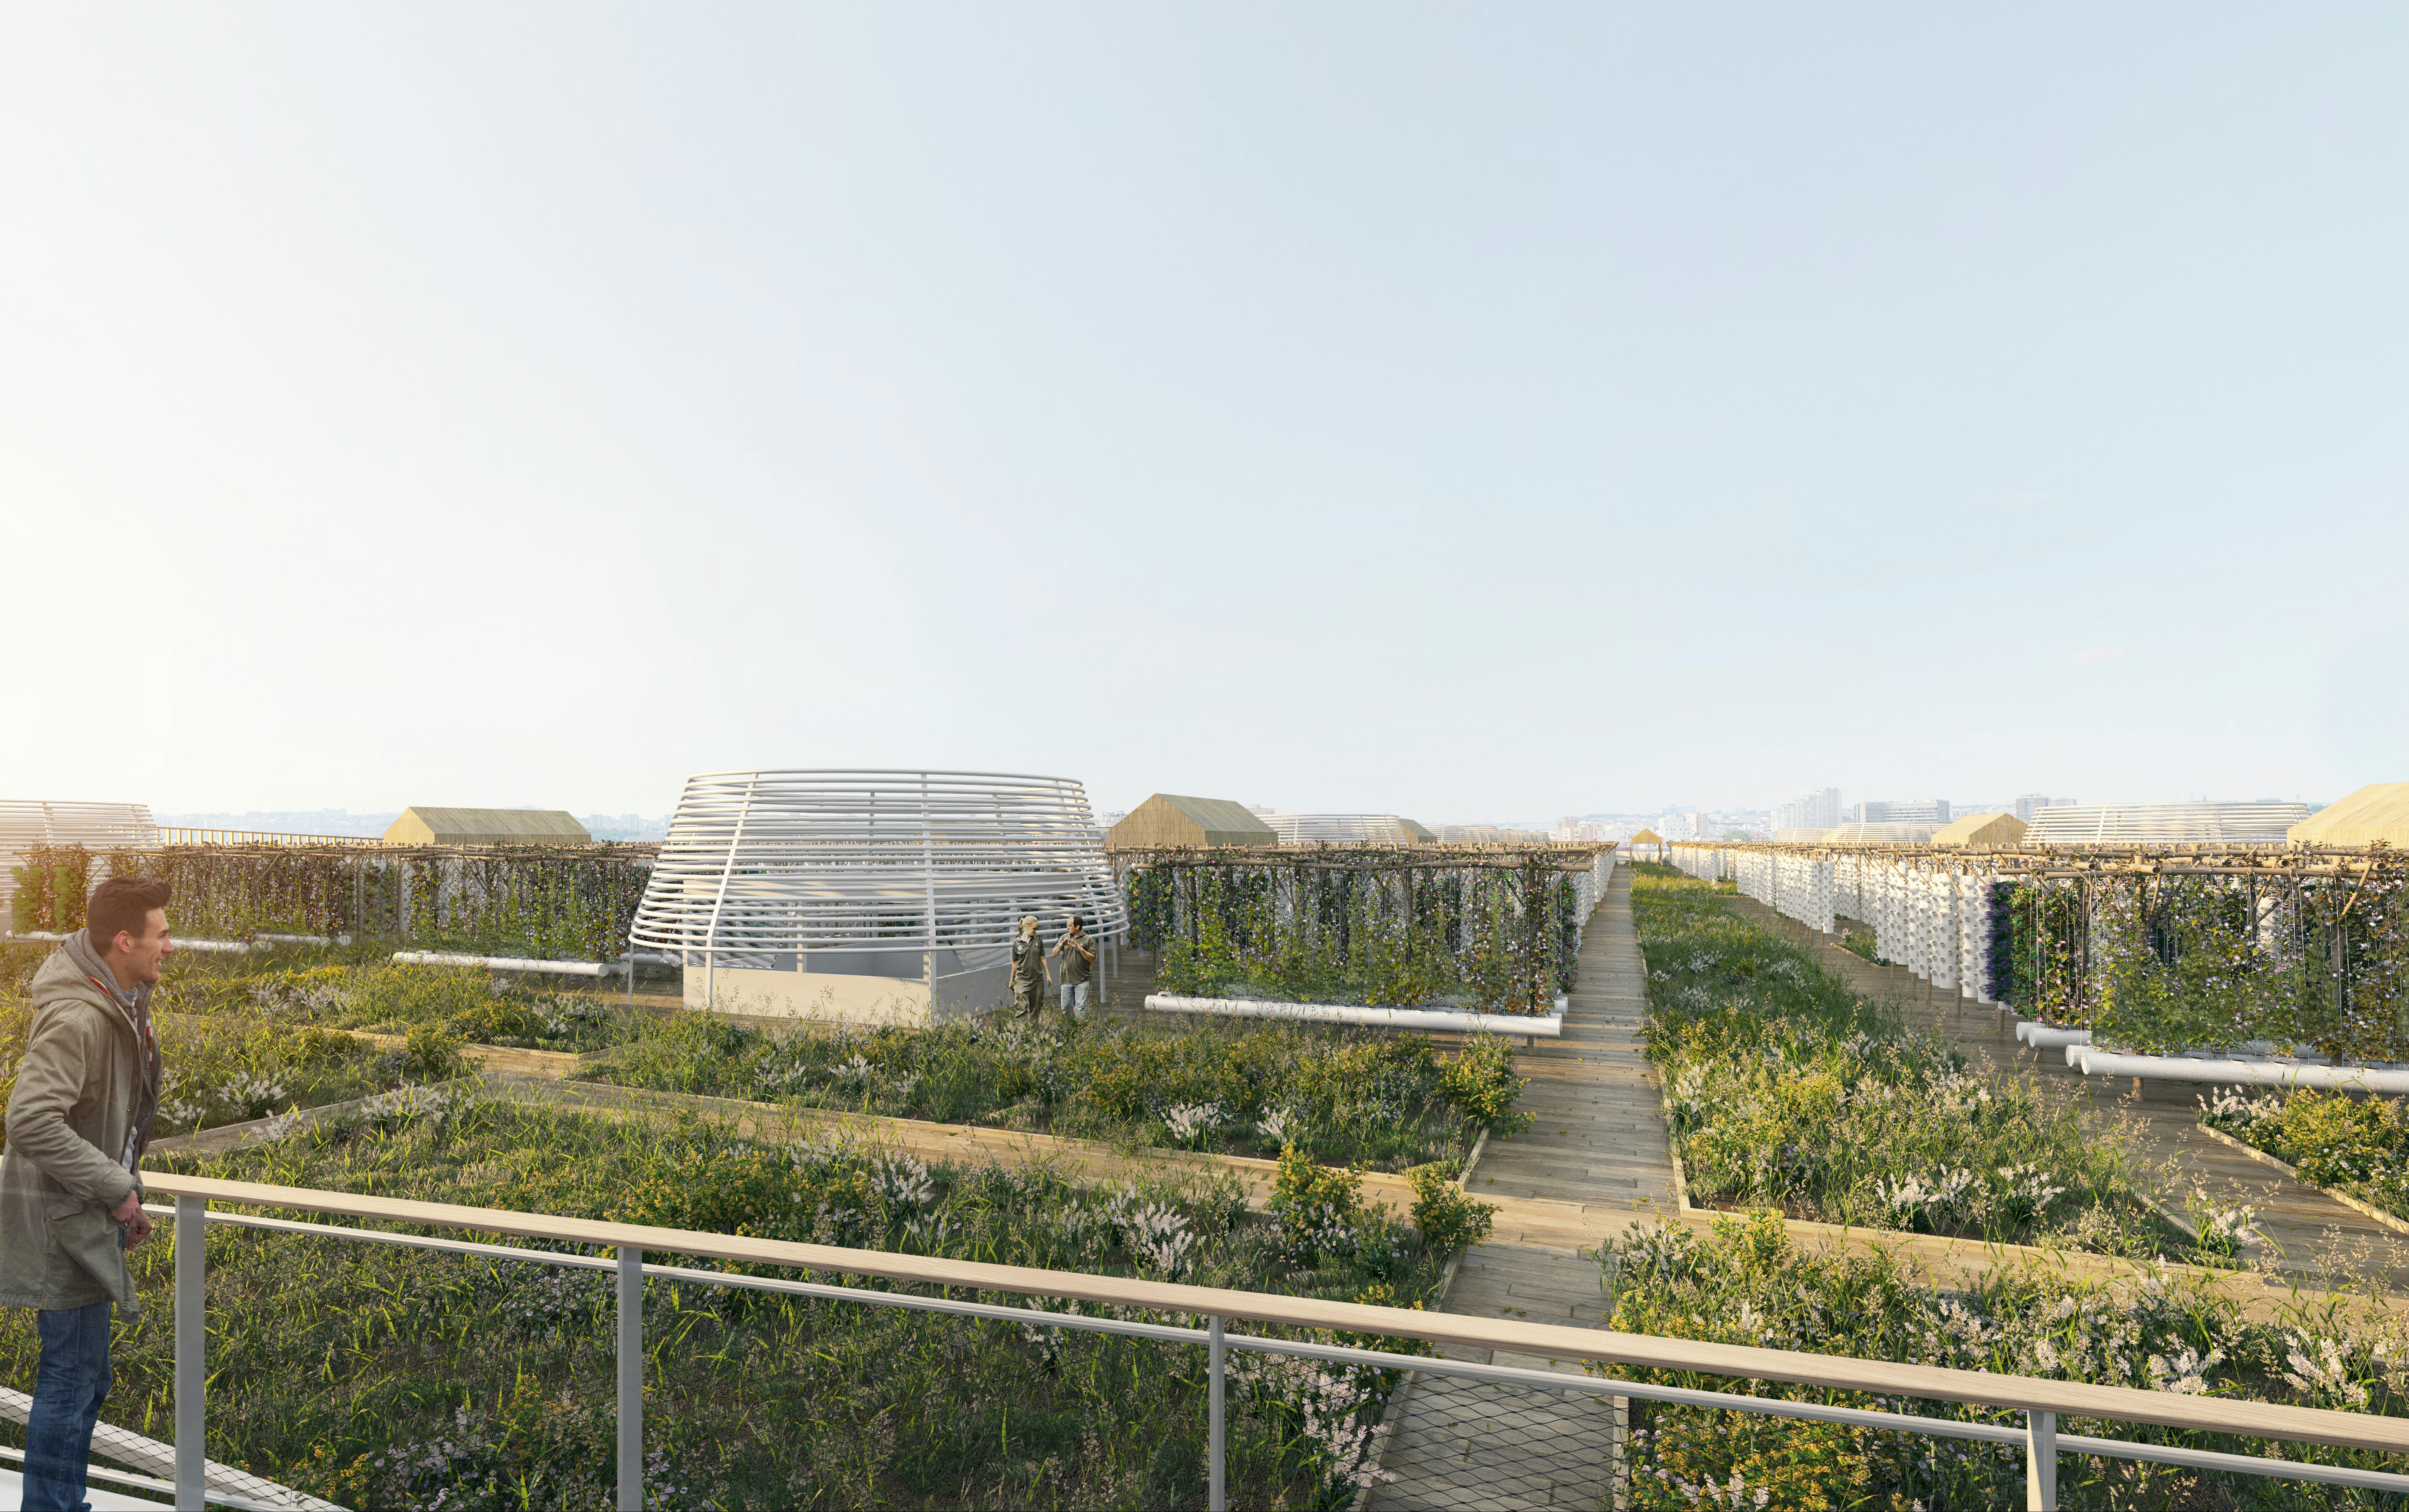 Rendering of rows of vegetable plots in a Paris urban rooftop farm